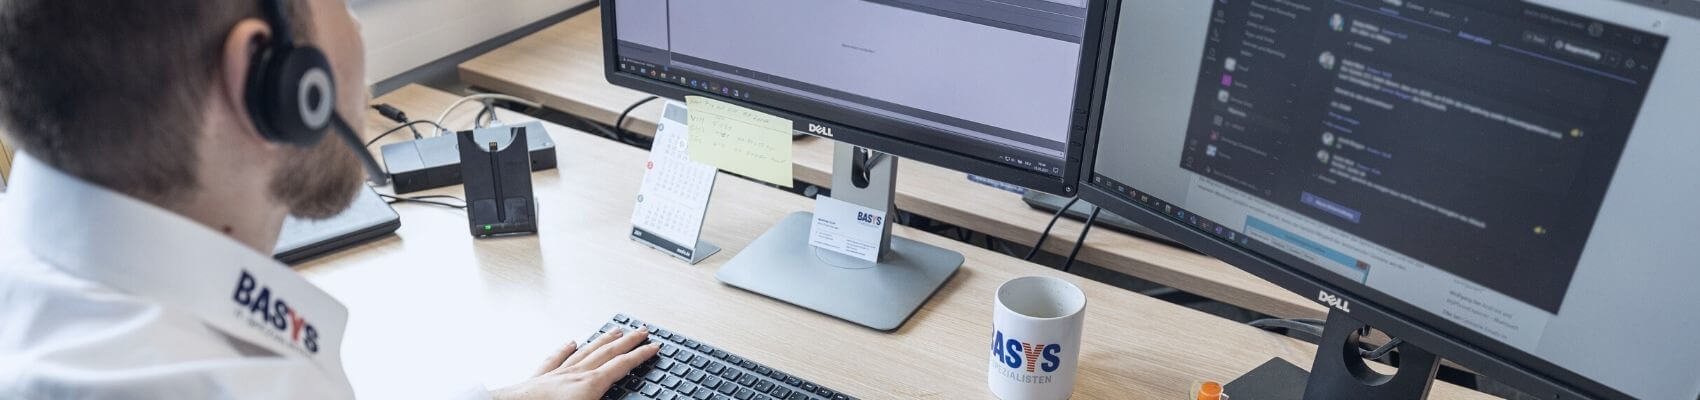 BASYS sucht eine*n IT-Systemspezialist*in (w/m/d) | Netzwerke